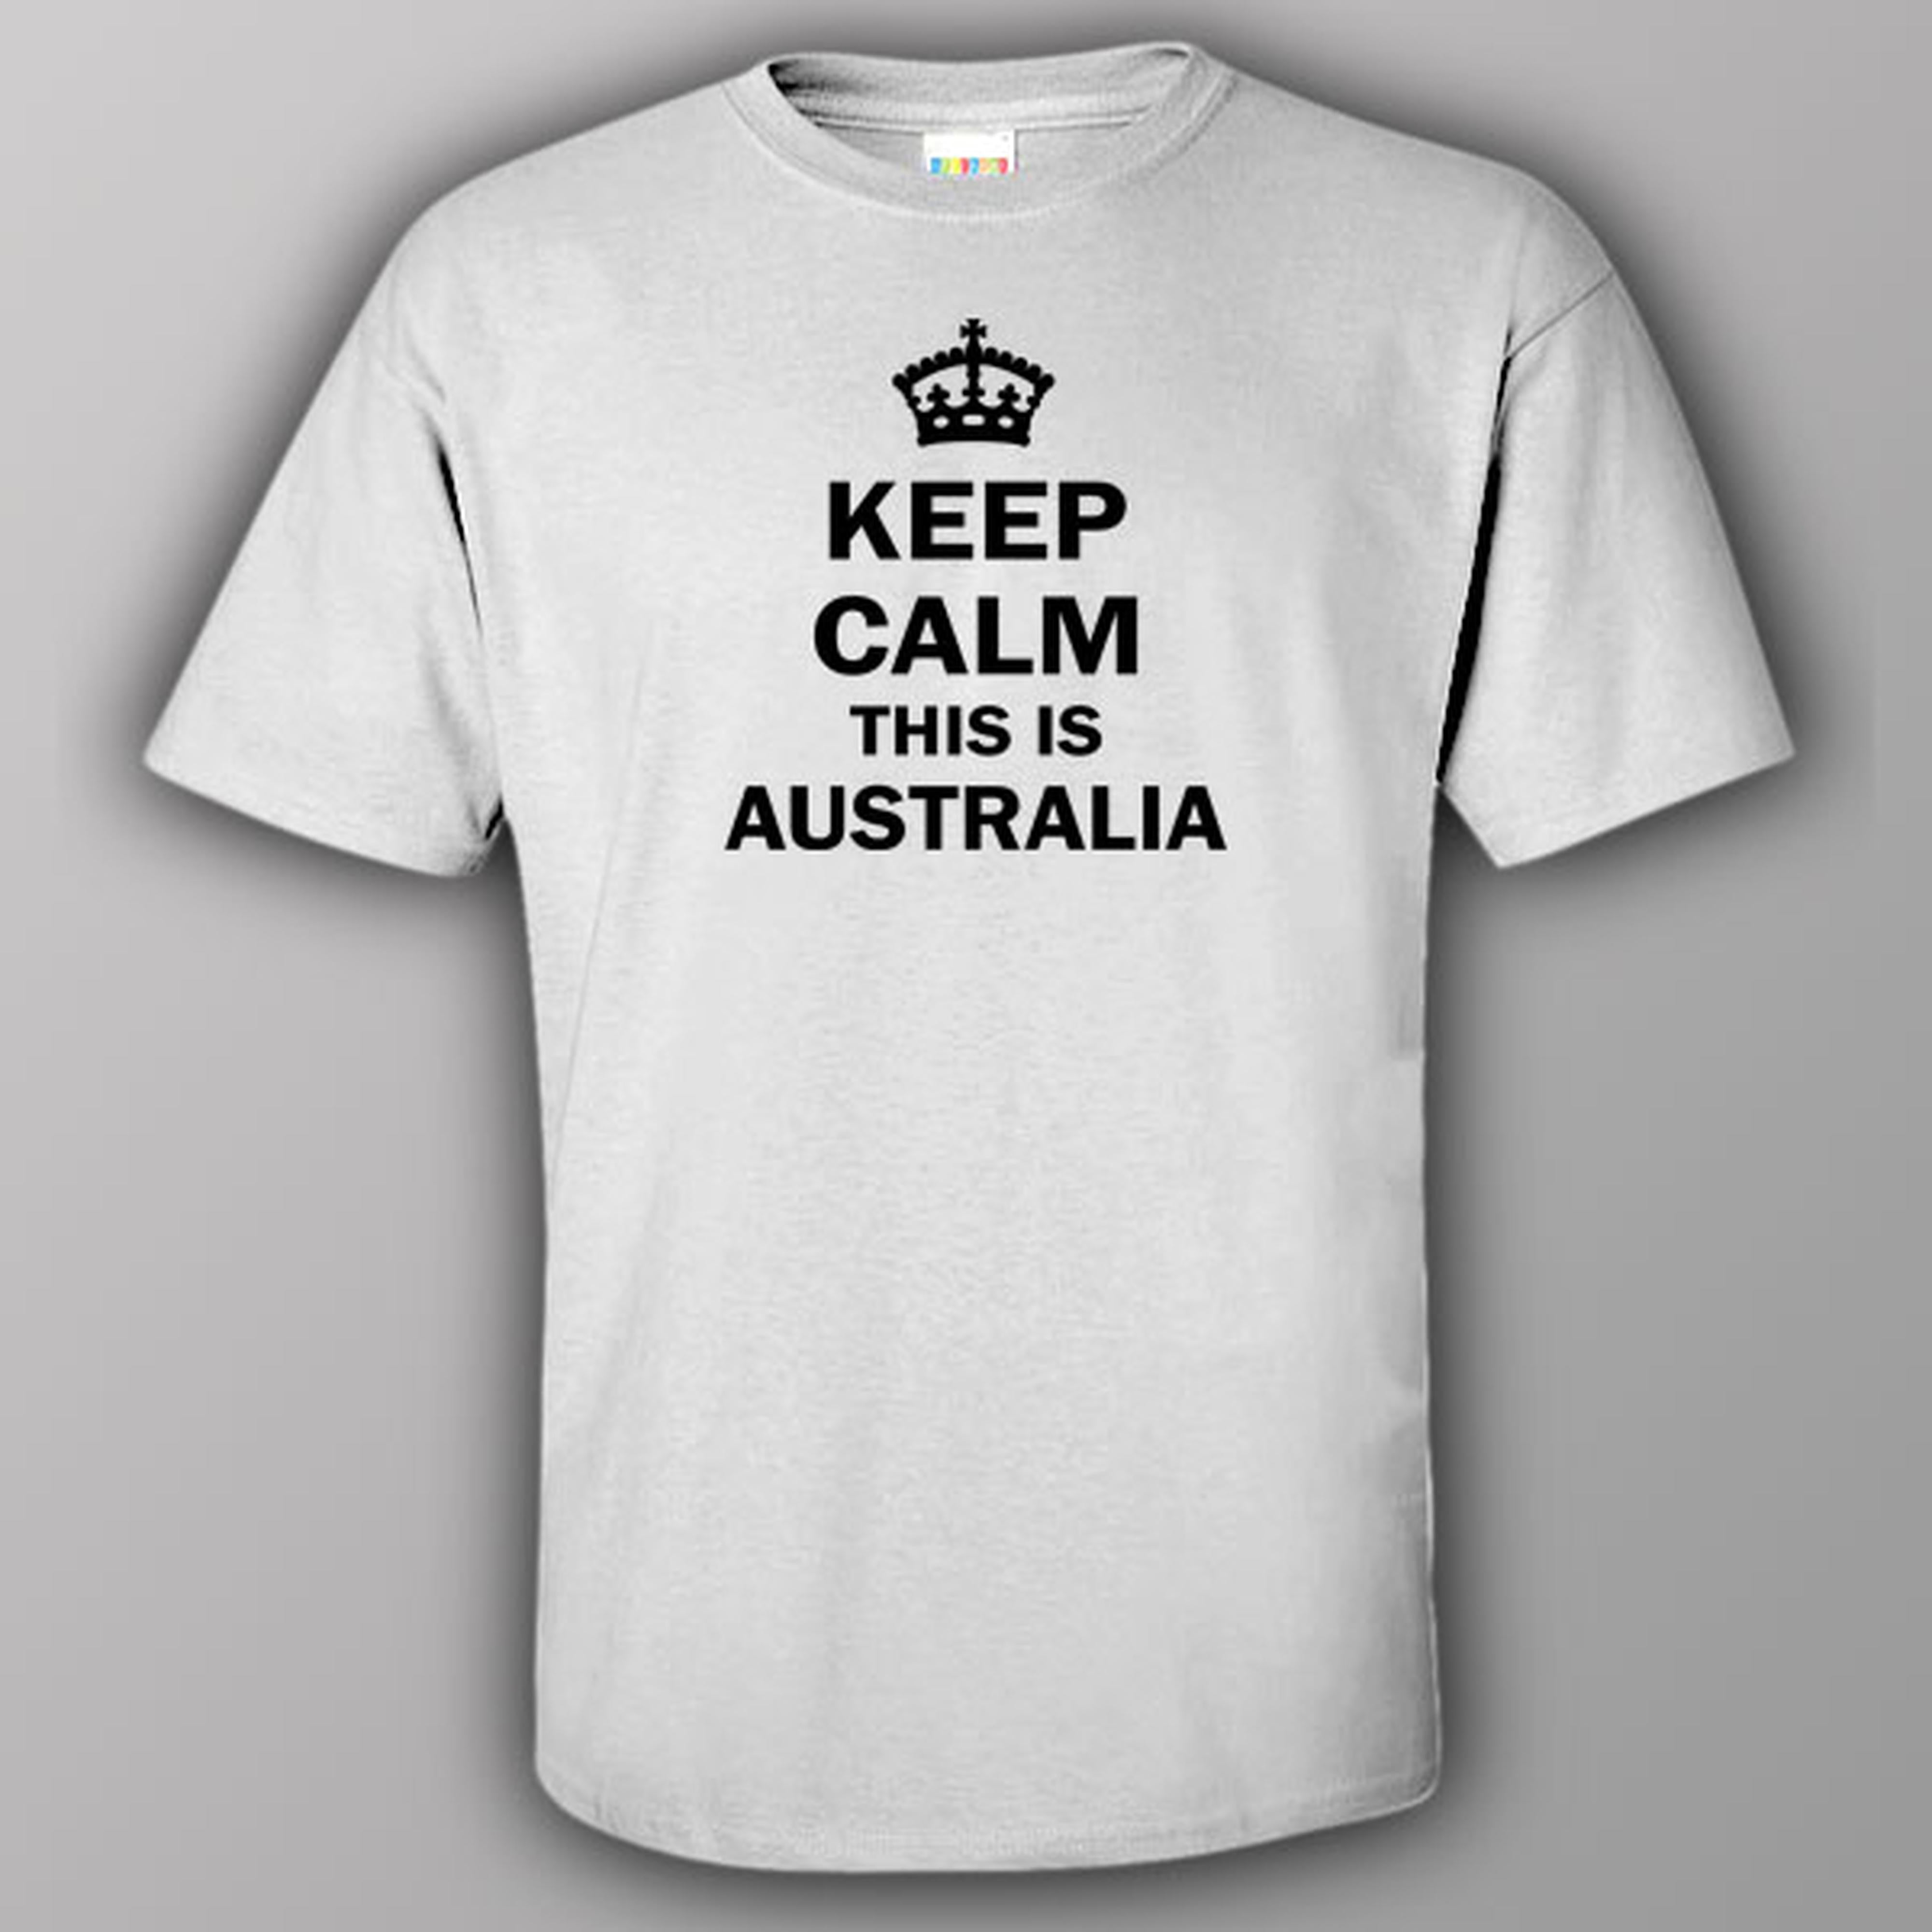 Keep calm this is Australia - T-shirt